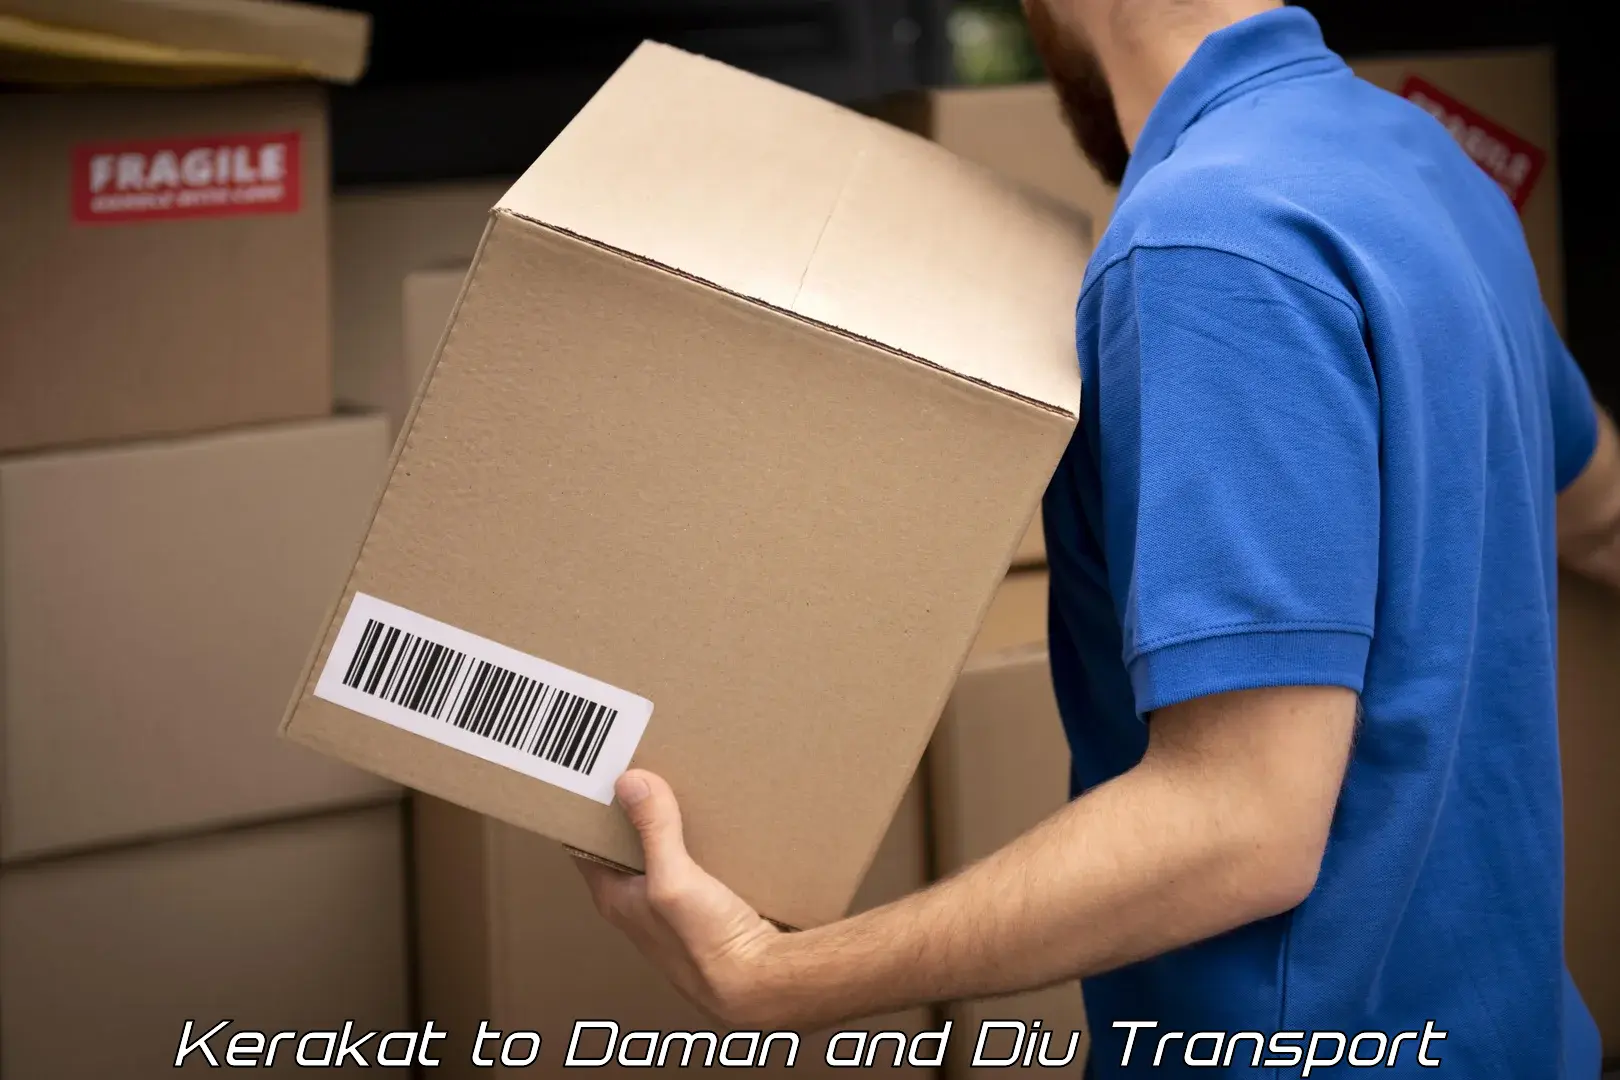 India truck logistics services Kerakat to Daman and Diu